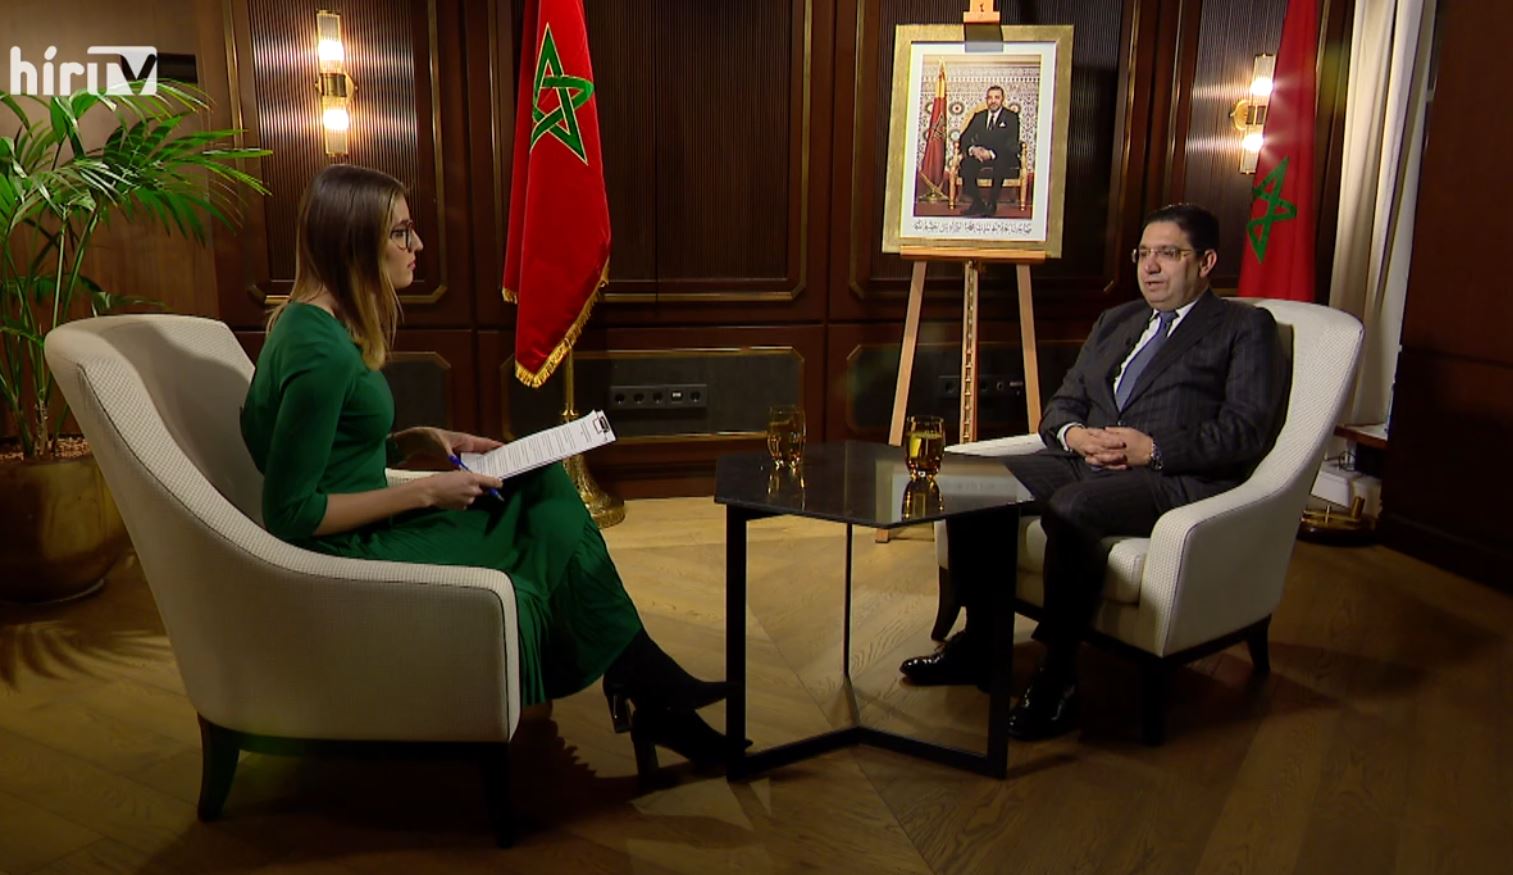 Globál: Exkluzív interjú a marokkói külügyminiszterrel